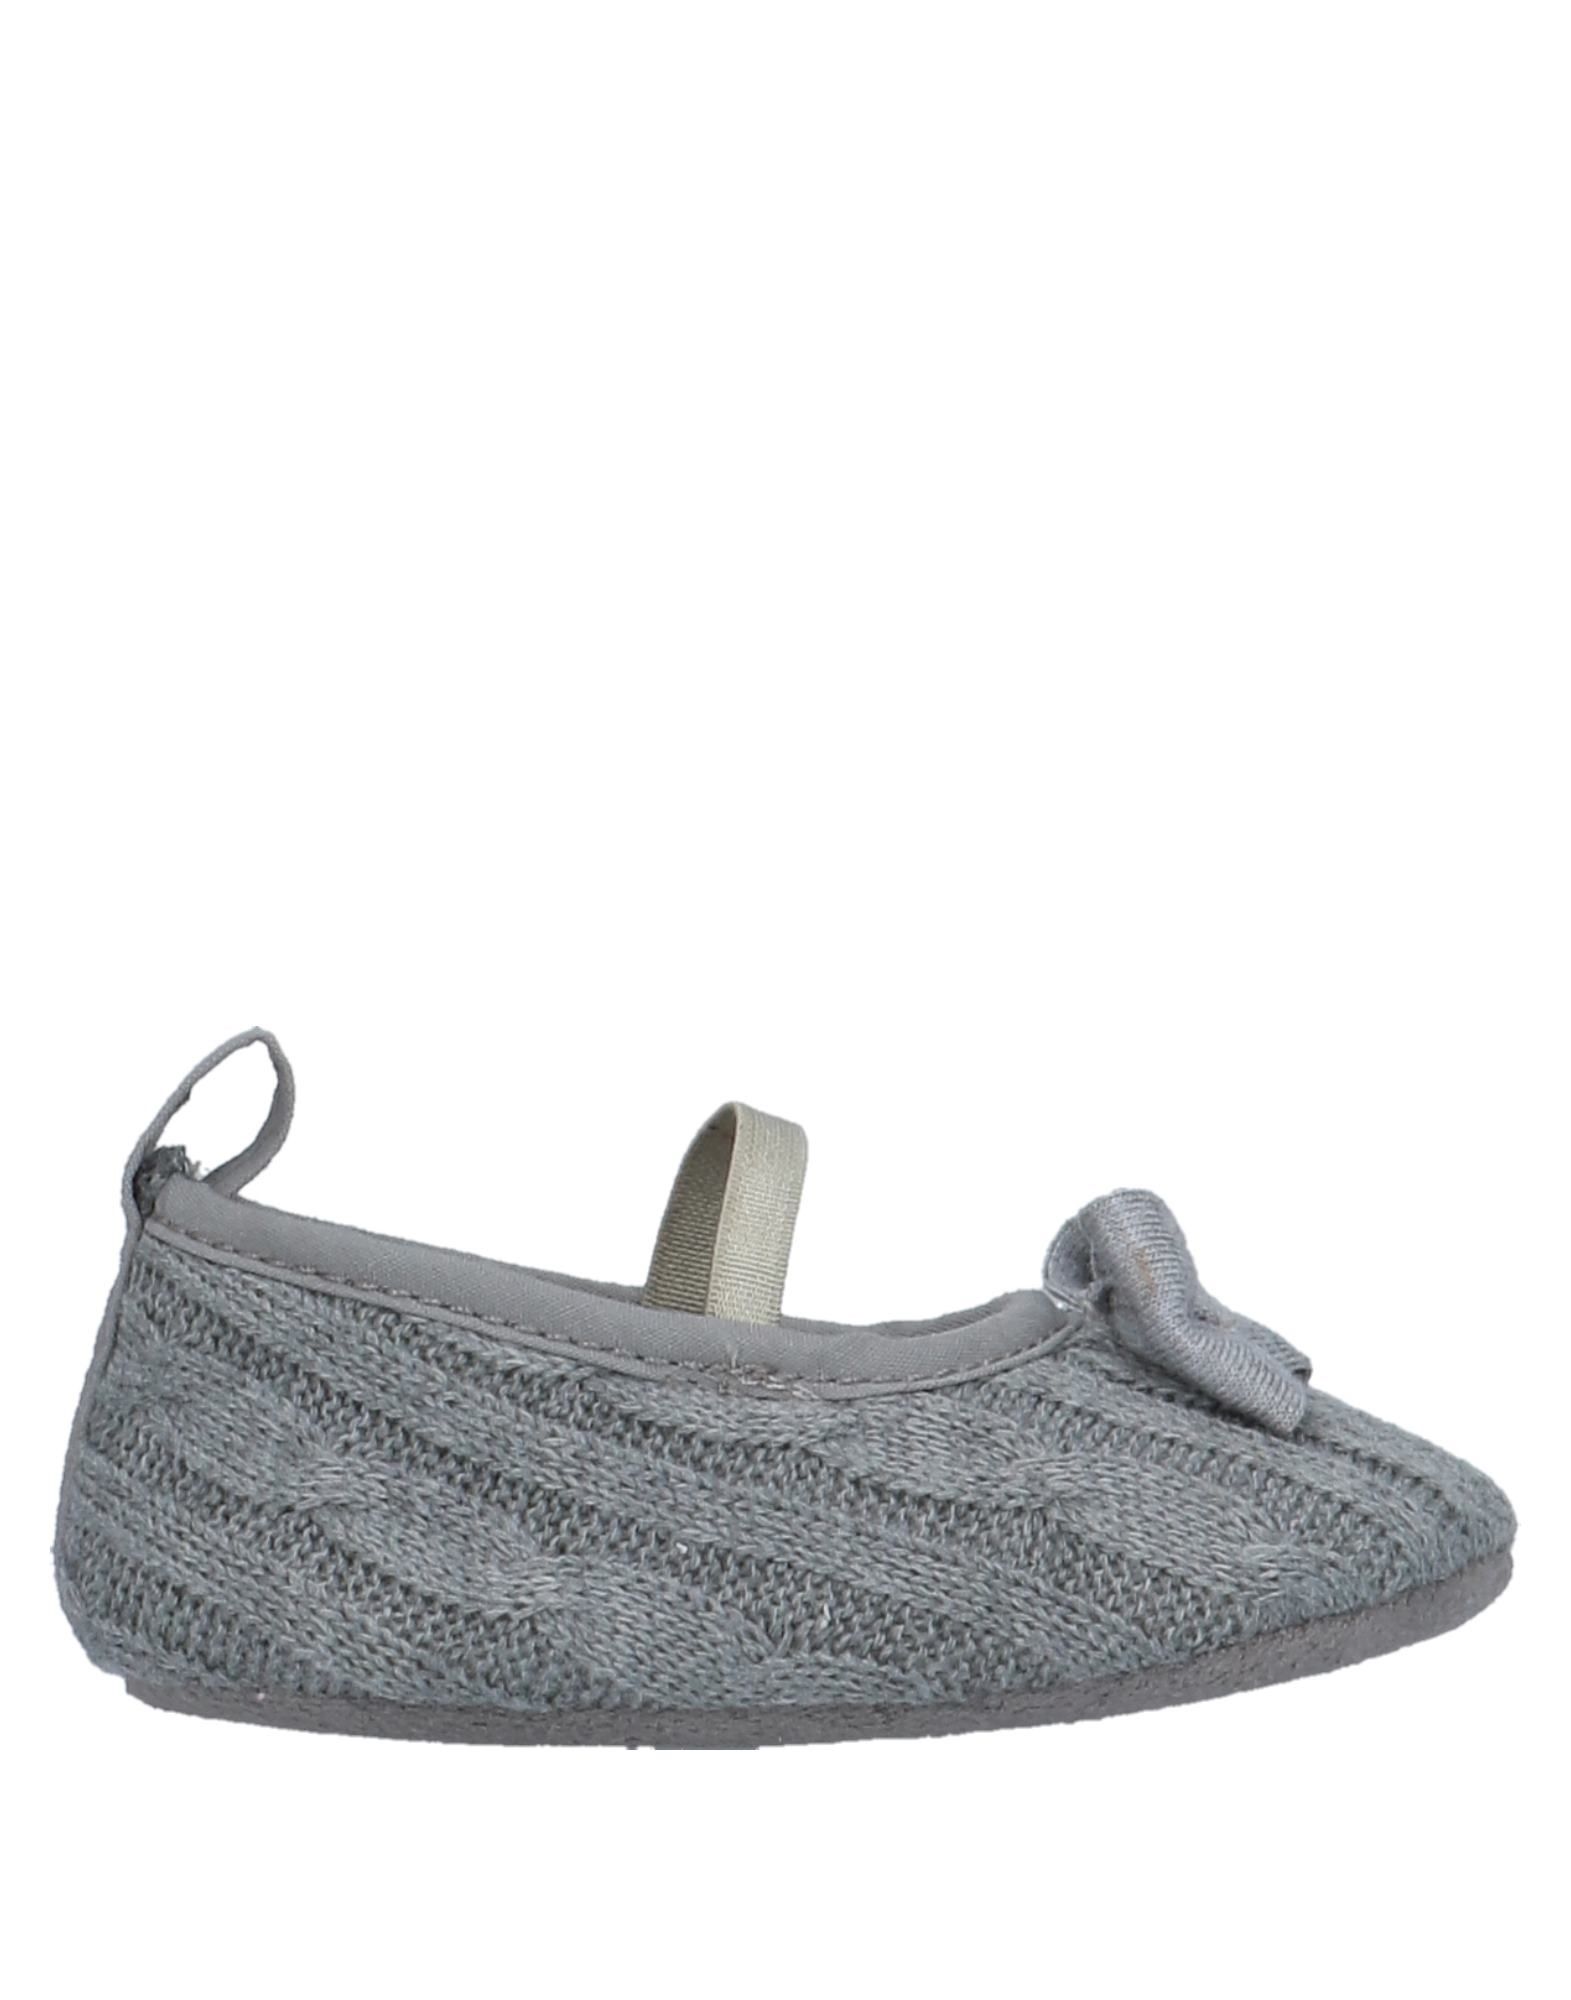 HARMONT & BLAINE Schuhe Für Neugeborene Kinder Grau von HARMONT & BLAINE